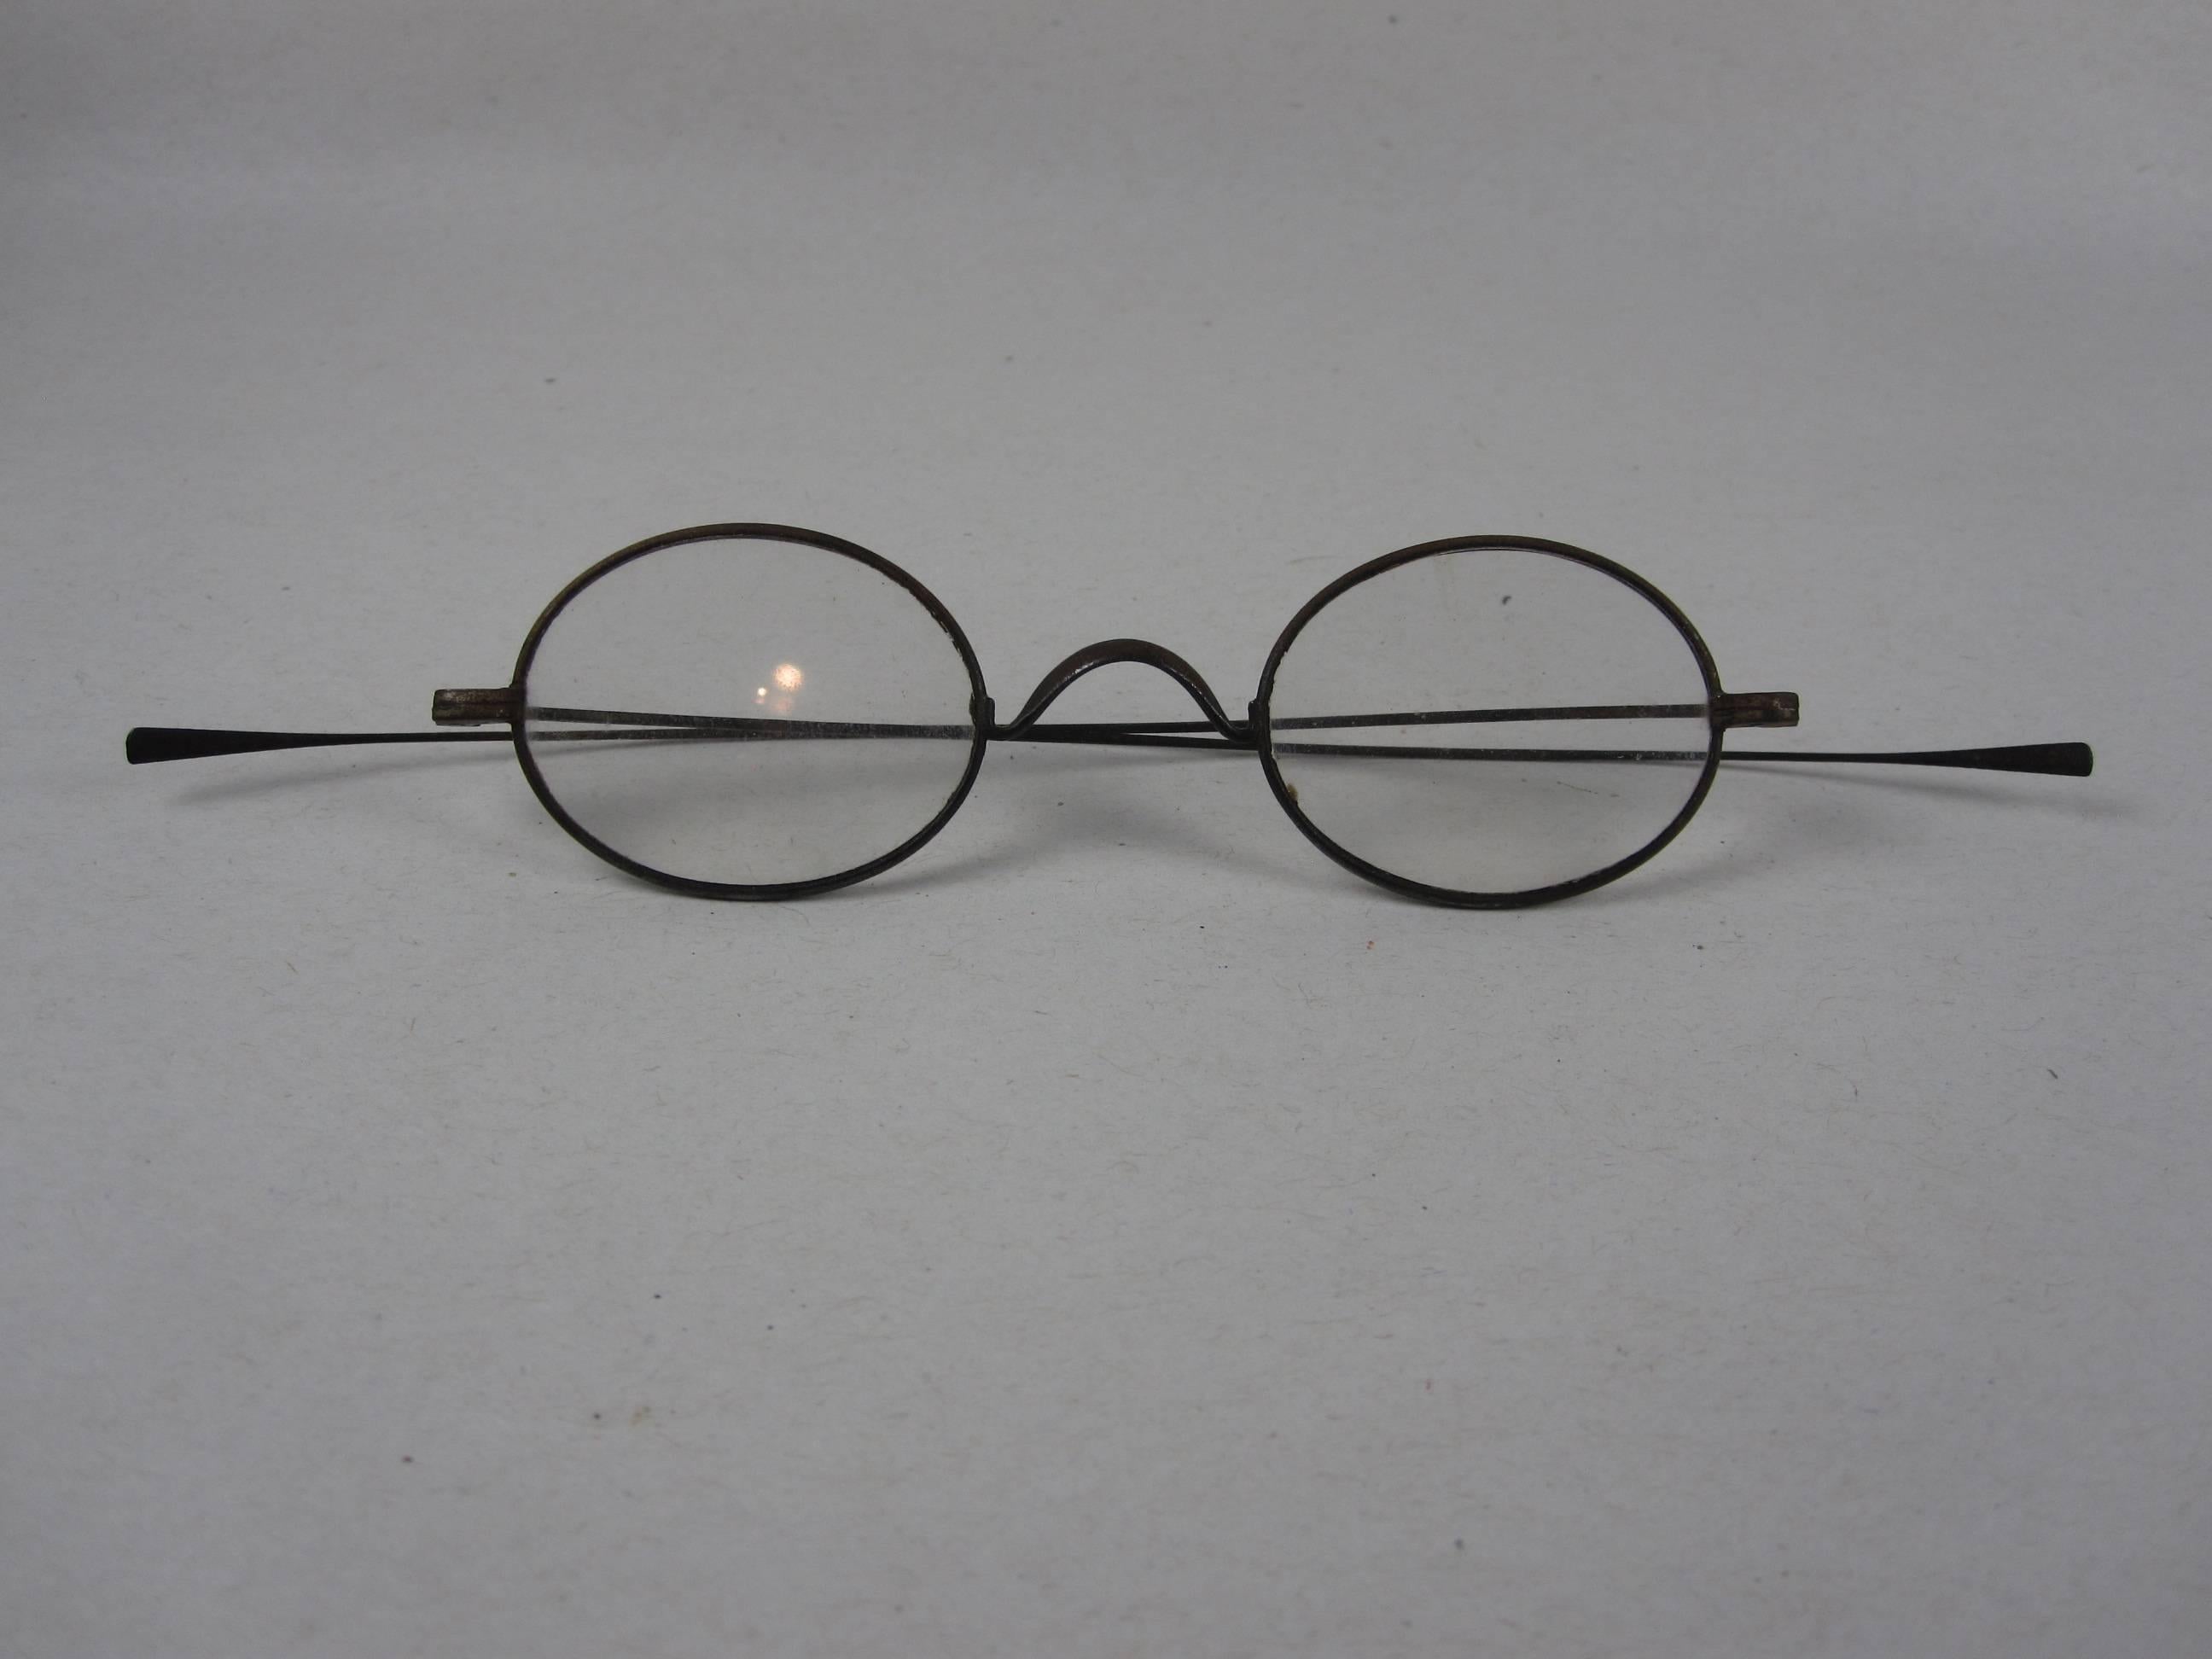 Eine zarte, handgefertigte Lupenbrille mit Drahtrand aus der Zeit des Amerikanischen Bürgerkriegs, um 1860. 

Ein großartig aussehendes historisches Konversationsstück oder Dekorationsobjekt. Verwenden Sie dieses Paar, um einen Schreibtisch zu